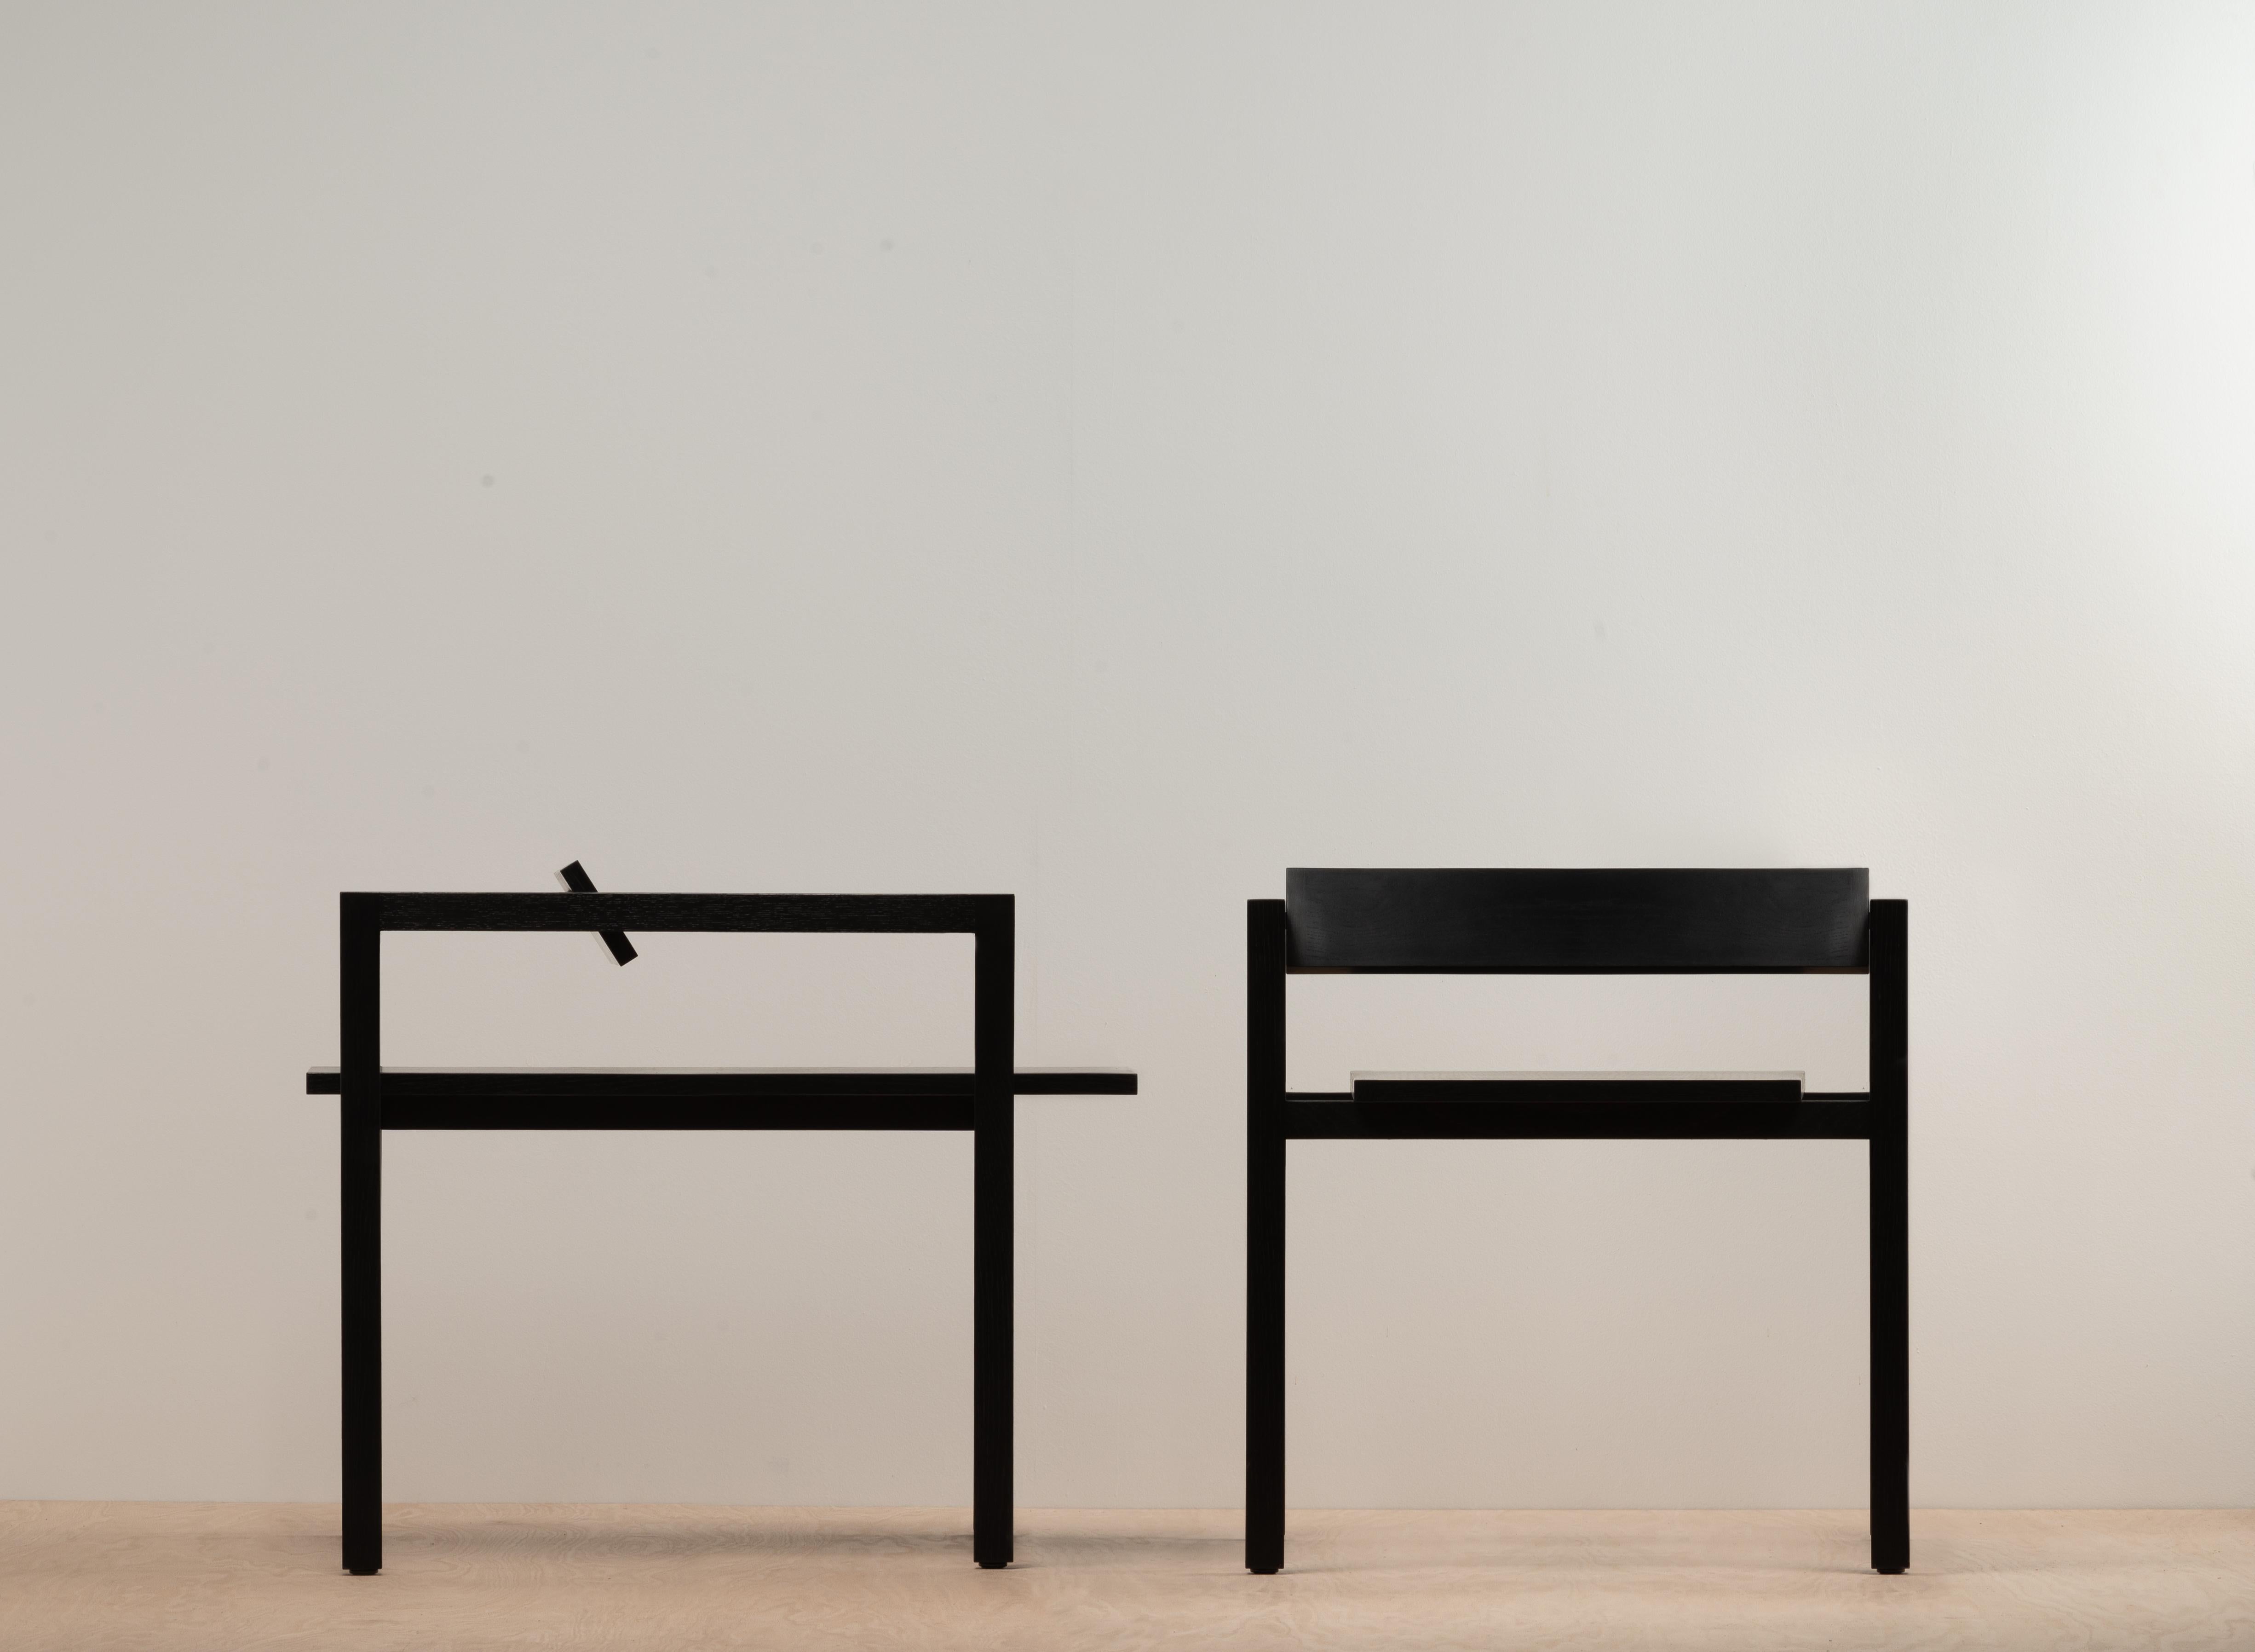 Box chair est une chaise d'appoint minimale créée par le designer californien N. Bijan Pourfard pour mettre l'accent sur la simplicité linéaire et une qualité 